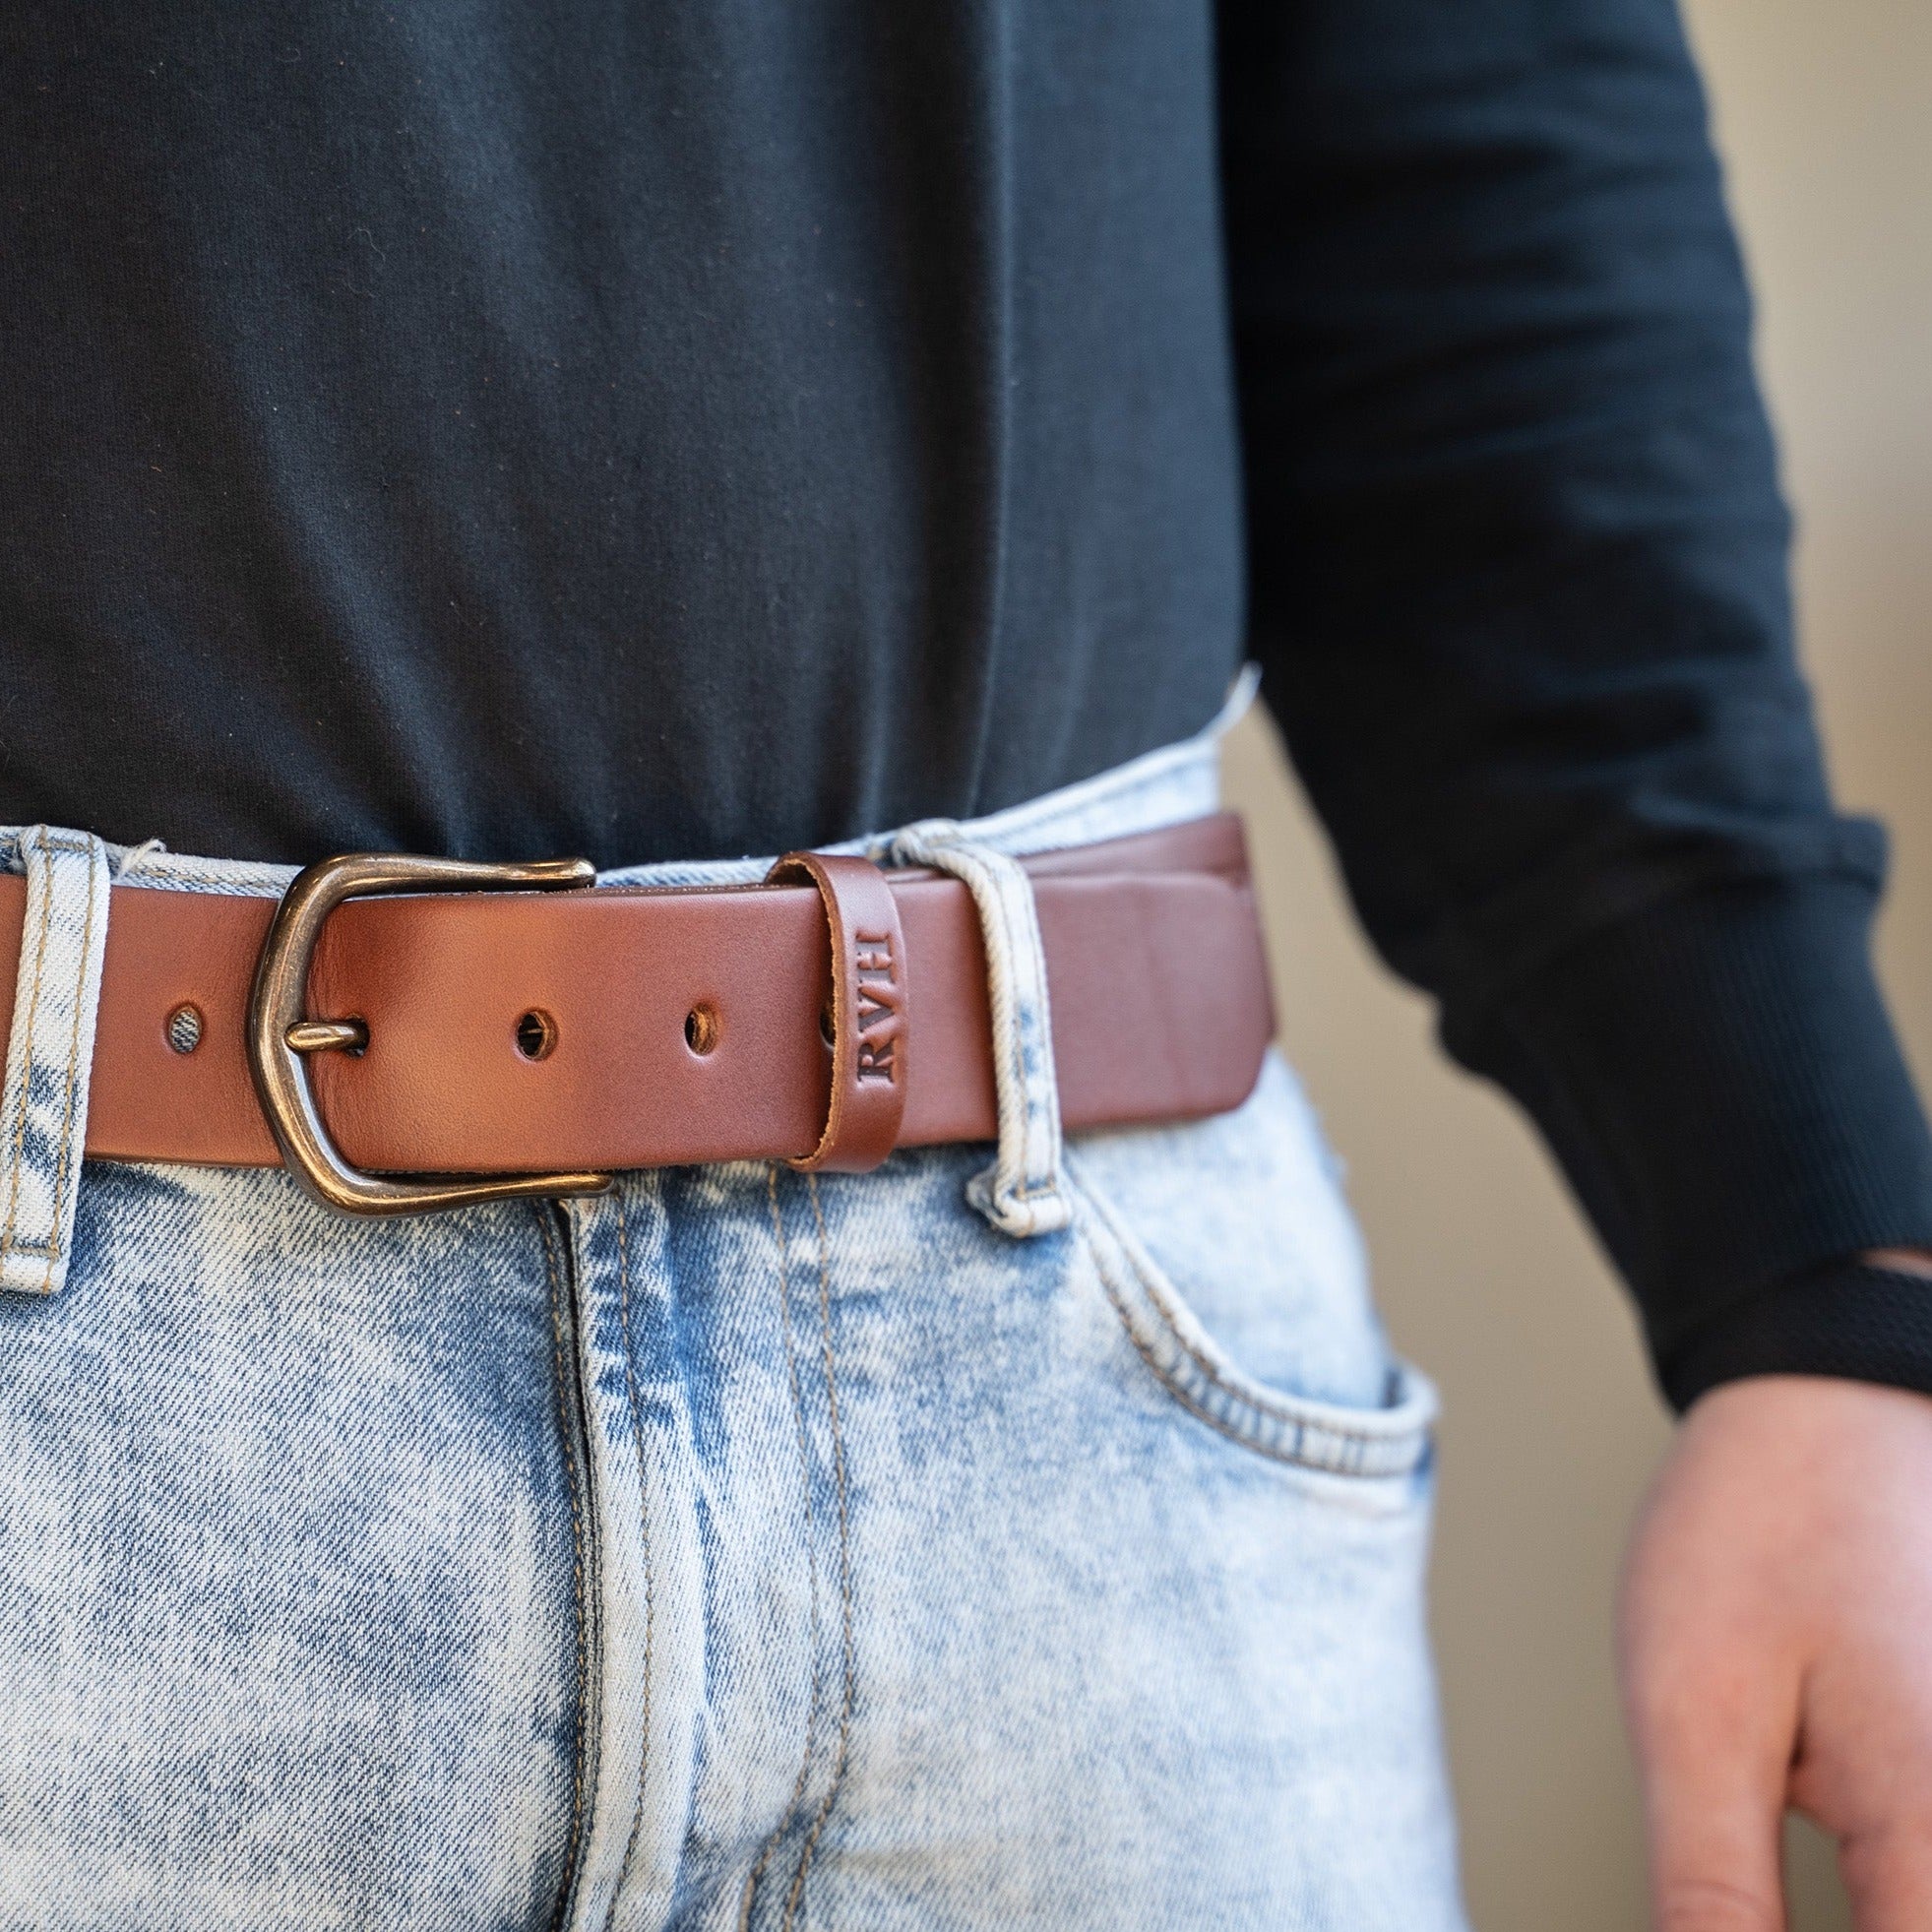 Men's High Quality K Letter Leather Belt